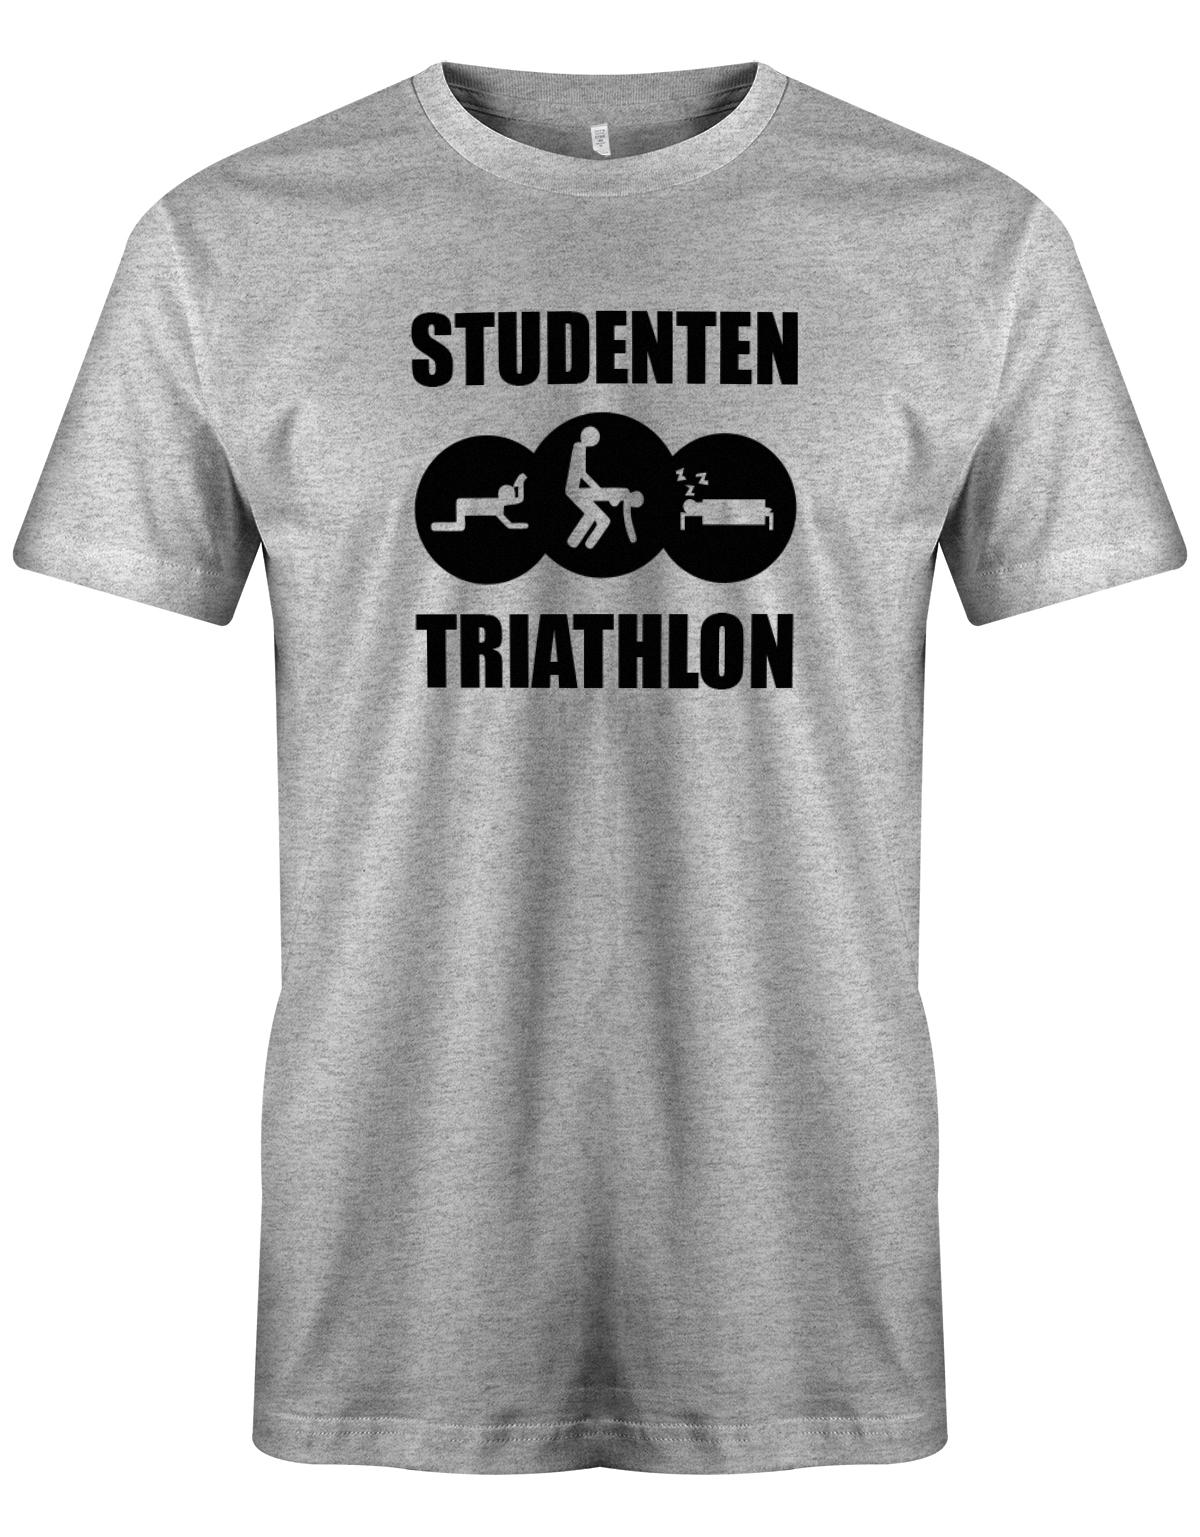 Studenten-Triahtlon-Herren-Shirt-Grau